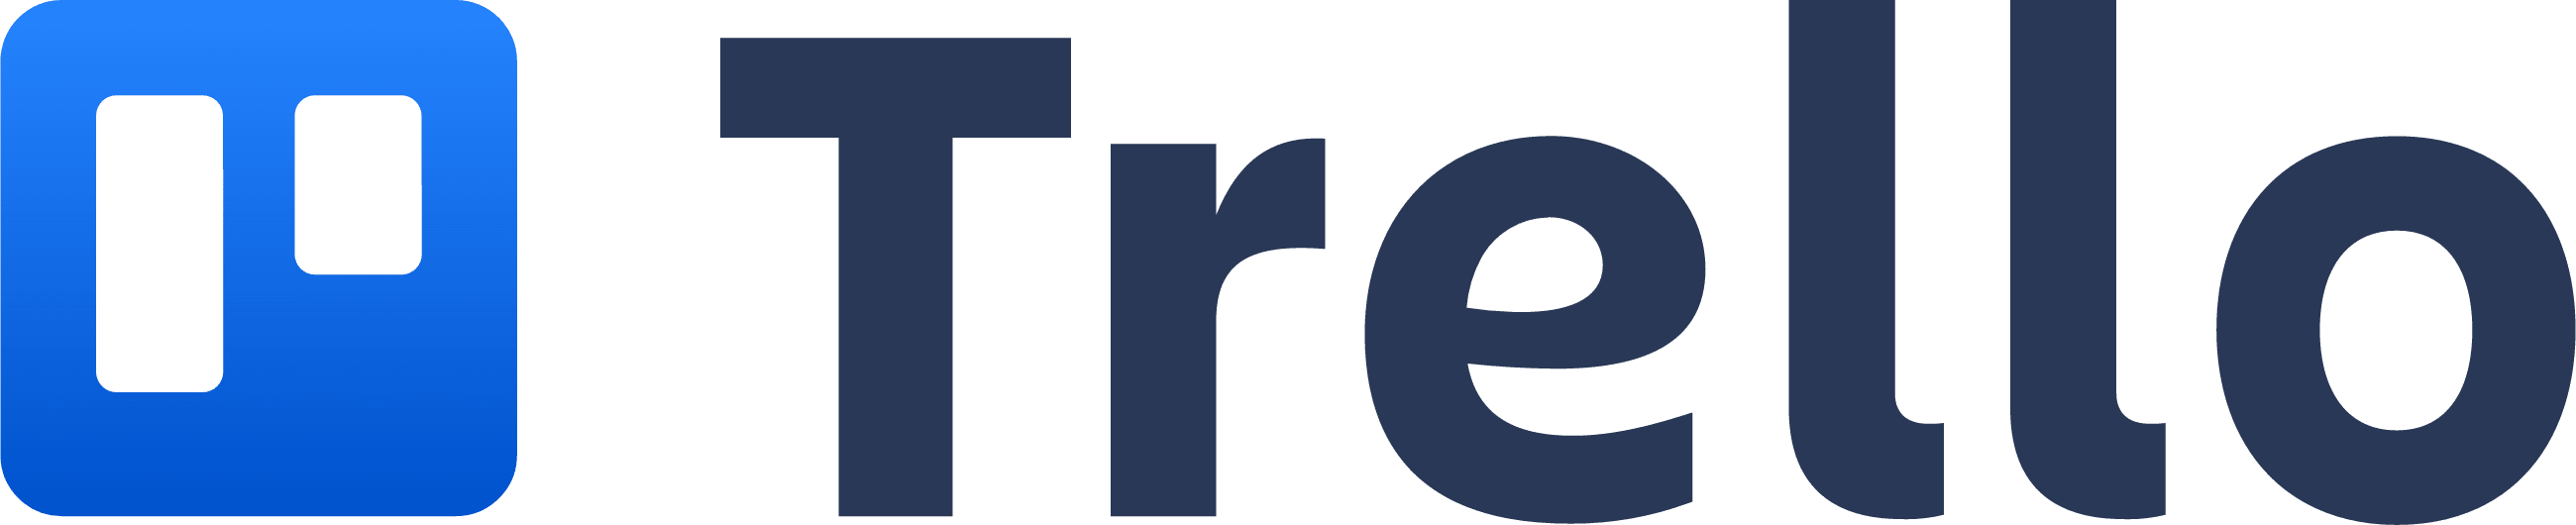 Trello logo which resembles a trello board with two columns.